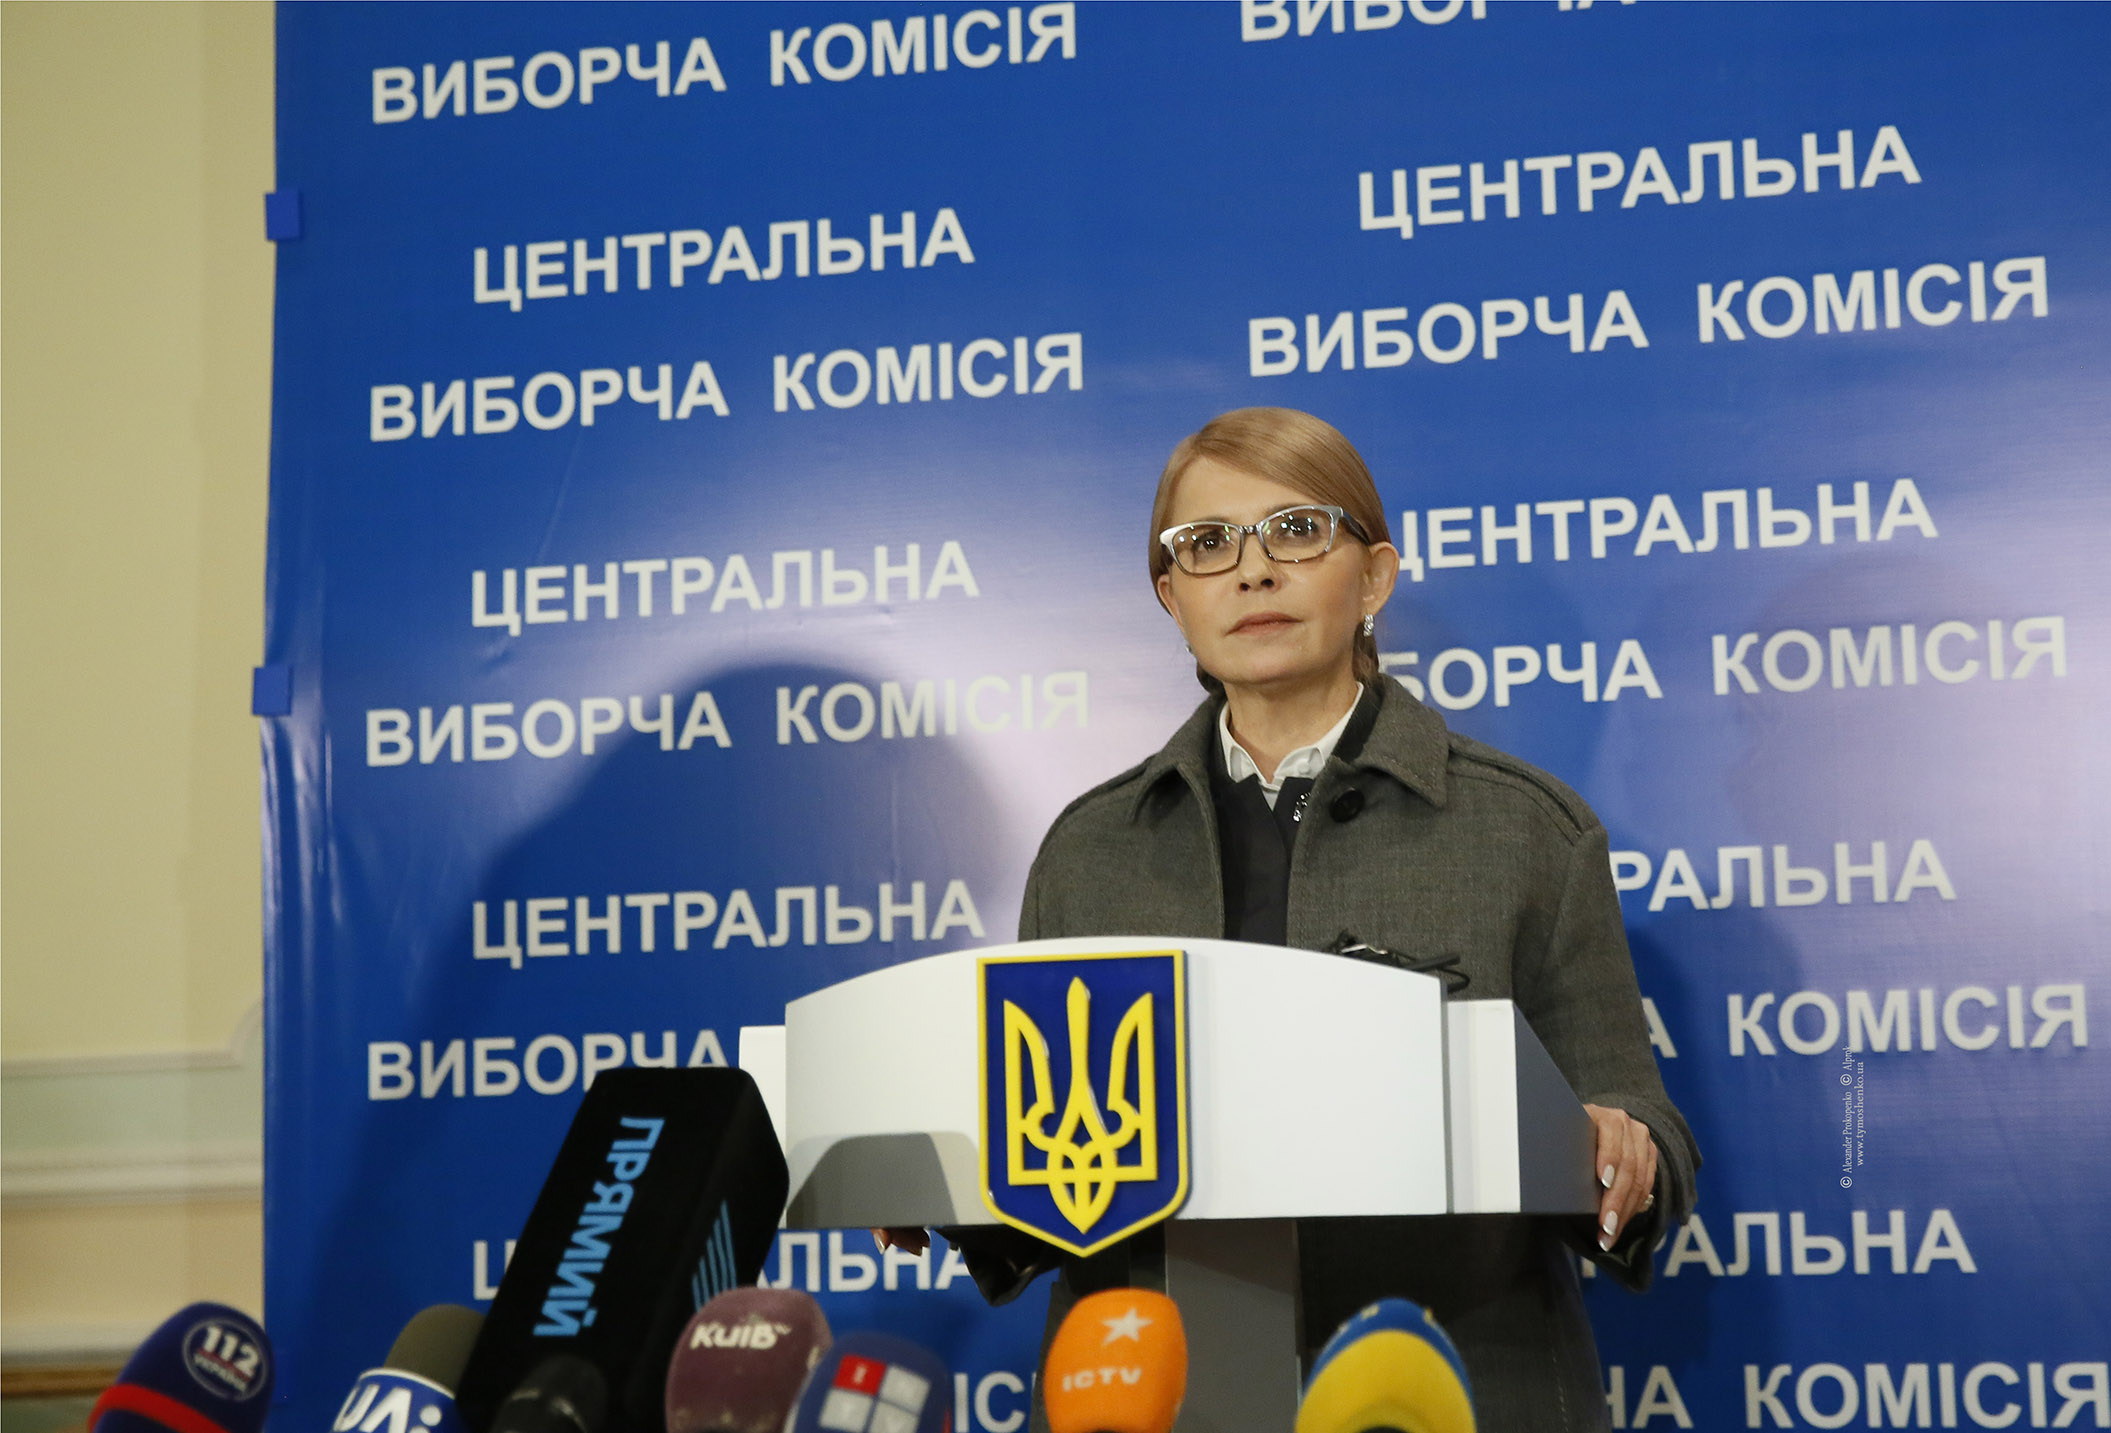 Yulia Tymoshenko: Ukraine’s Candidate of Uncertainty